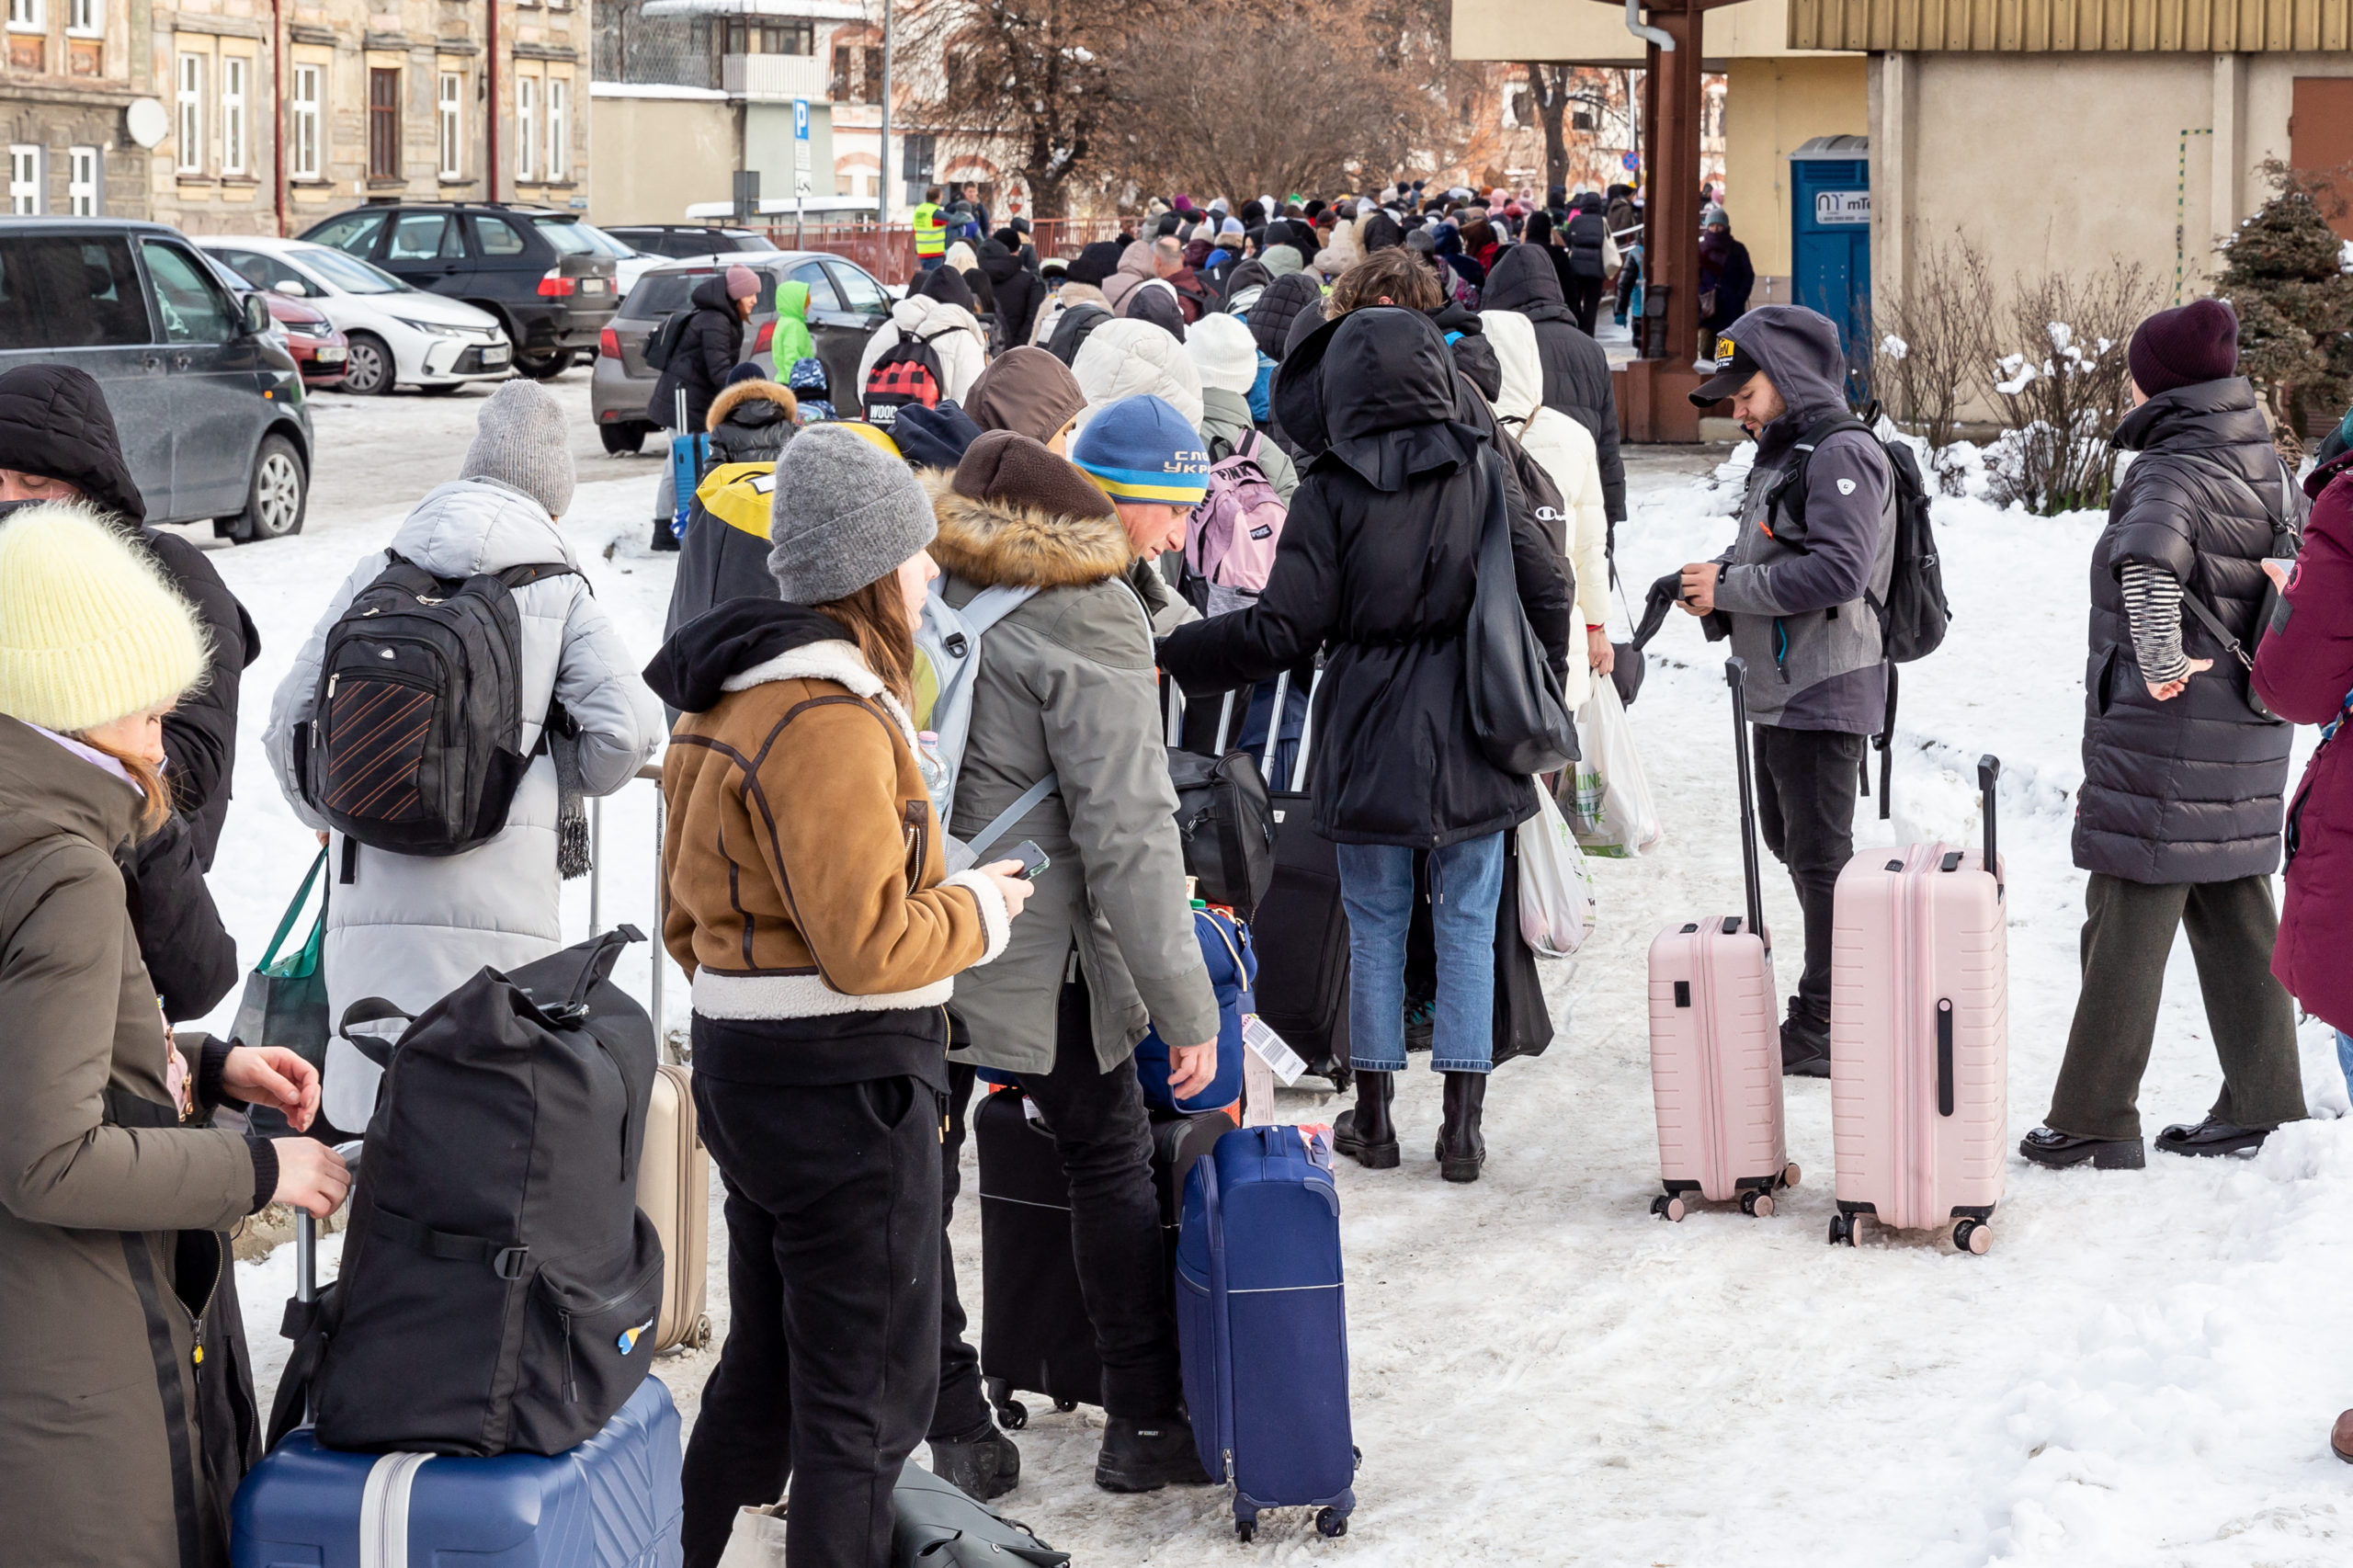 ORFK: csaknem tizenkét és félezren érkeztek Ukrajnából szombaton